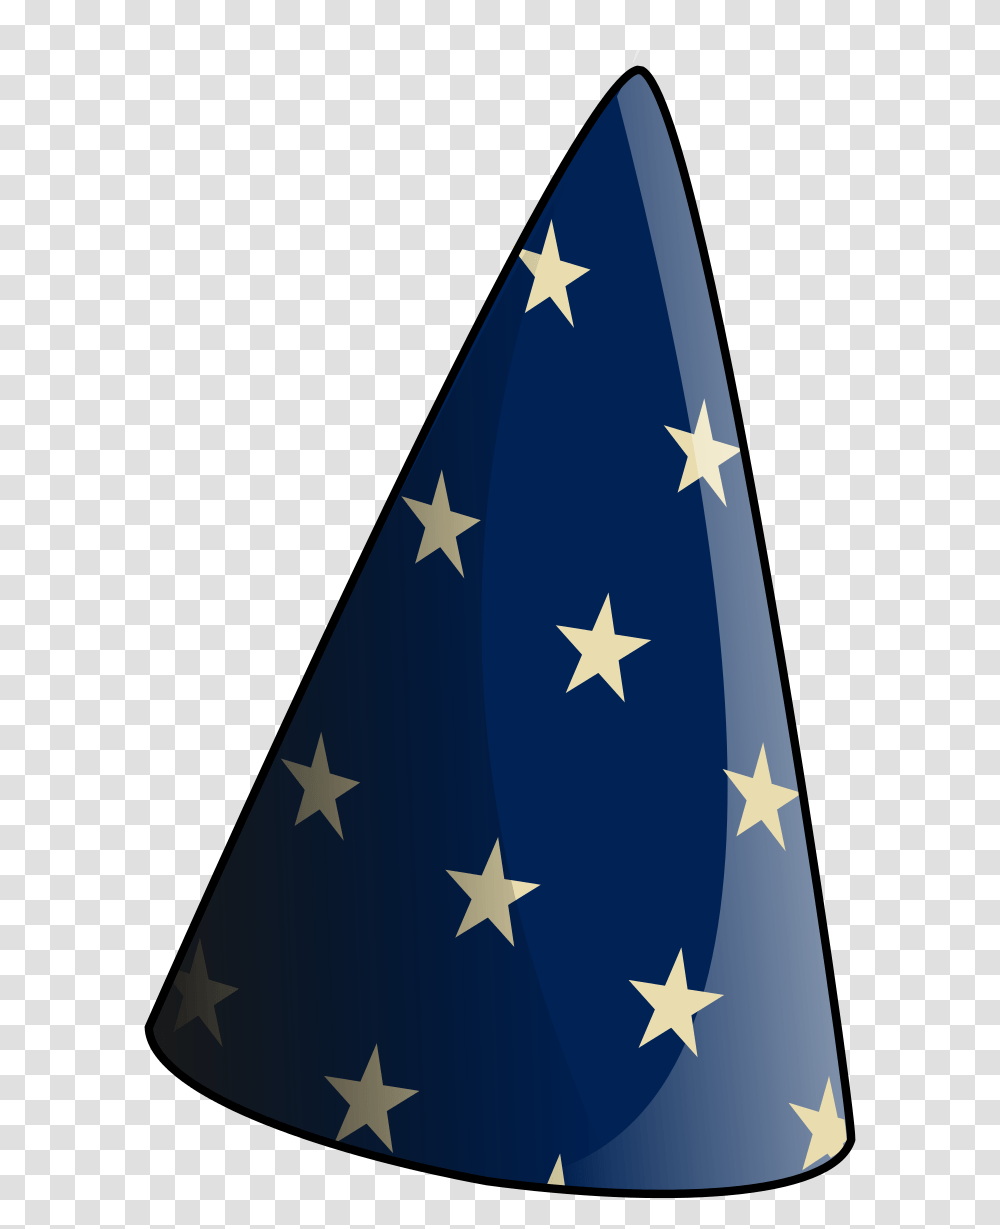 Mage Hat No Background, Flag, Star Symbol, American Flag Transparent Png